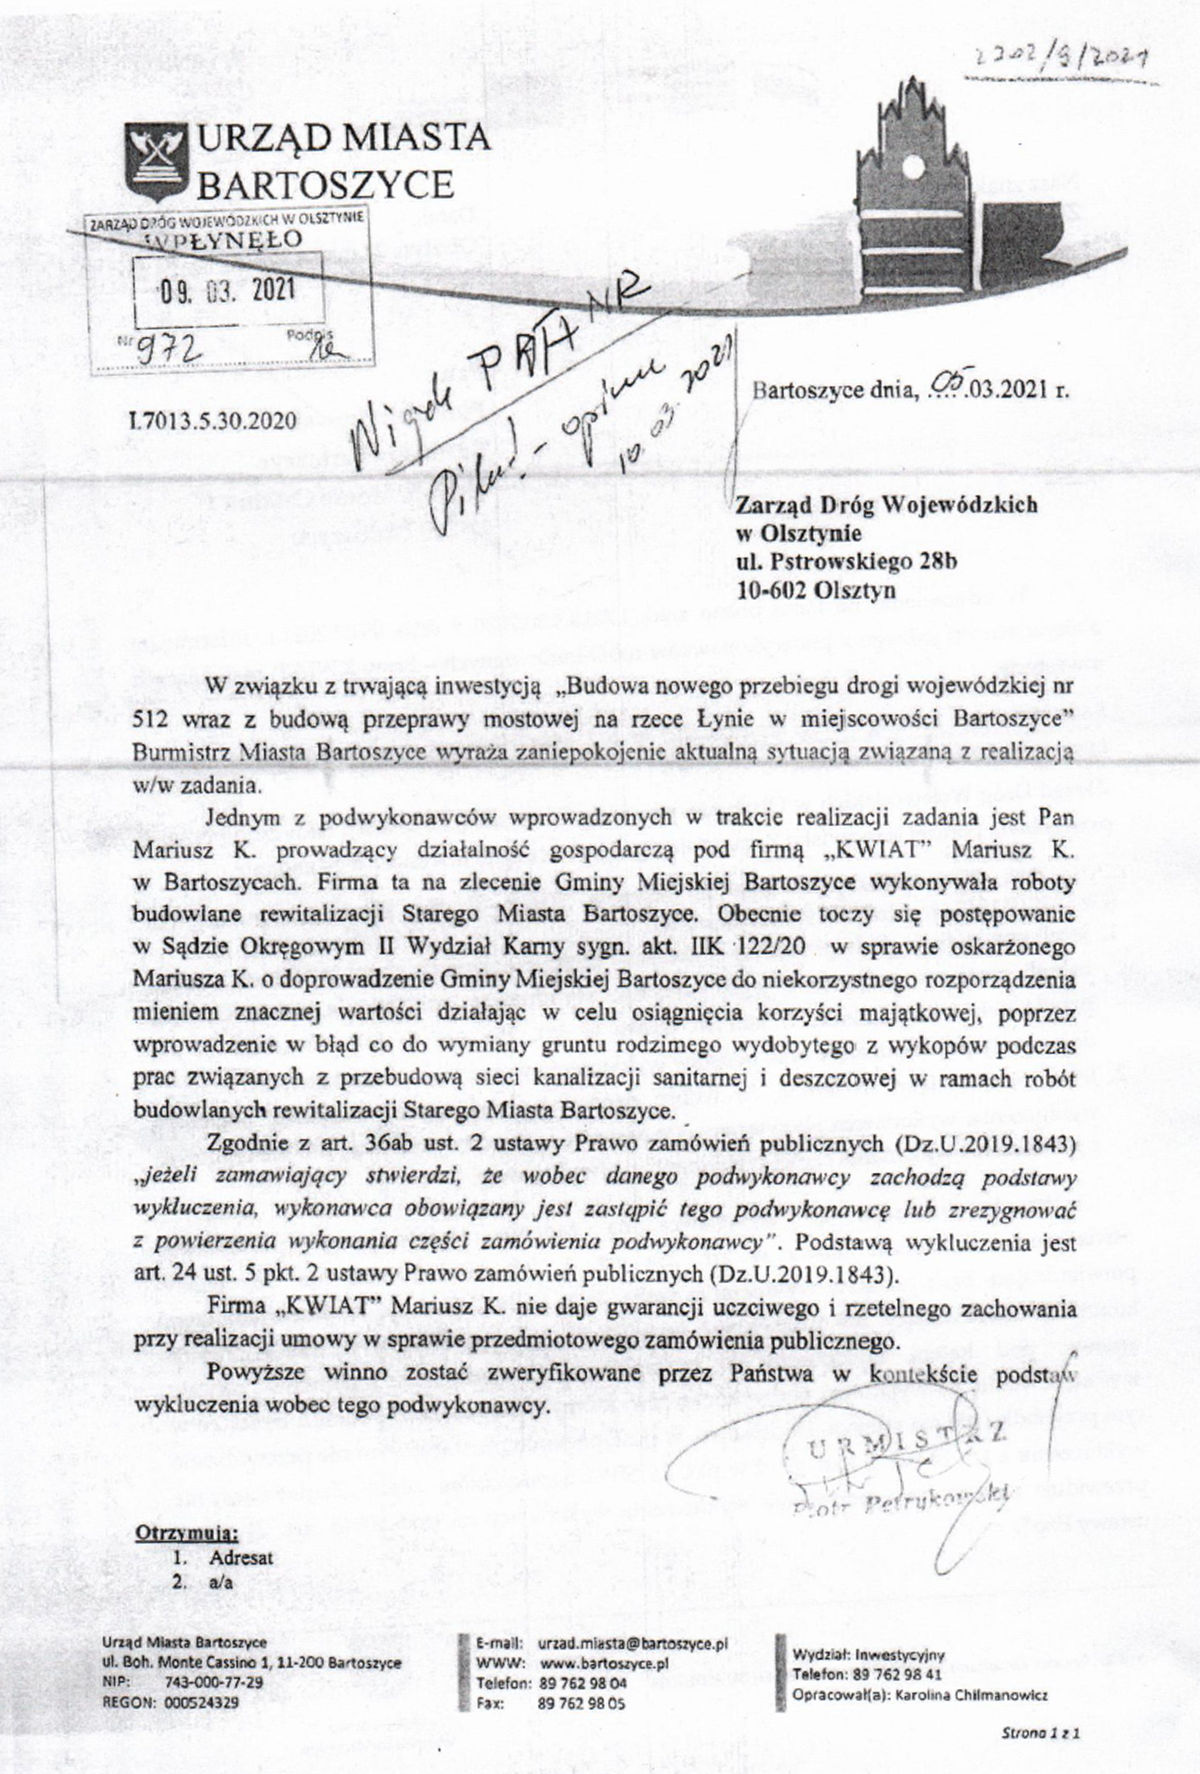 Pismo, wysłane przez burmistrza Piotra Petrykowskiego